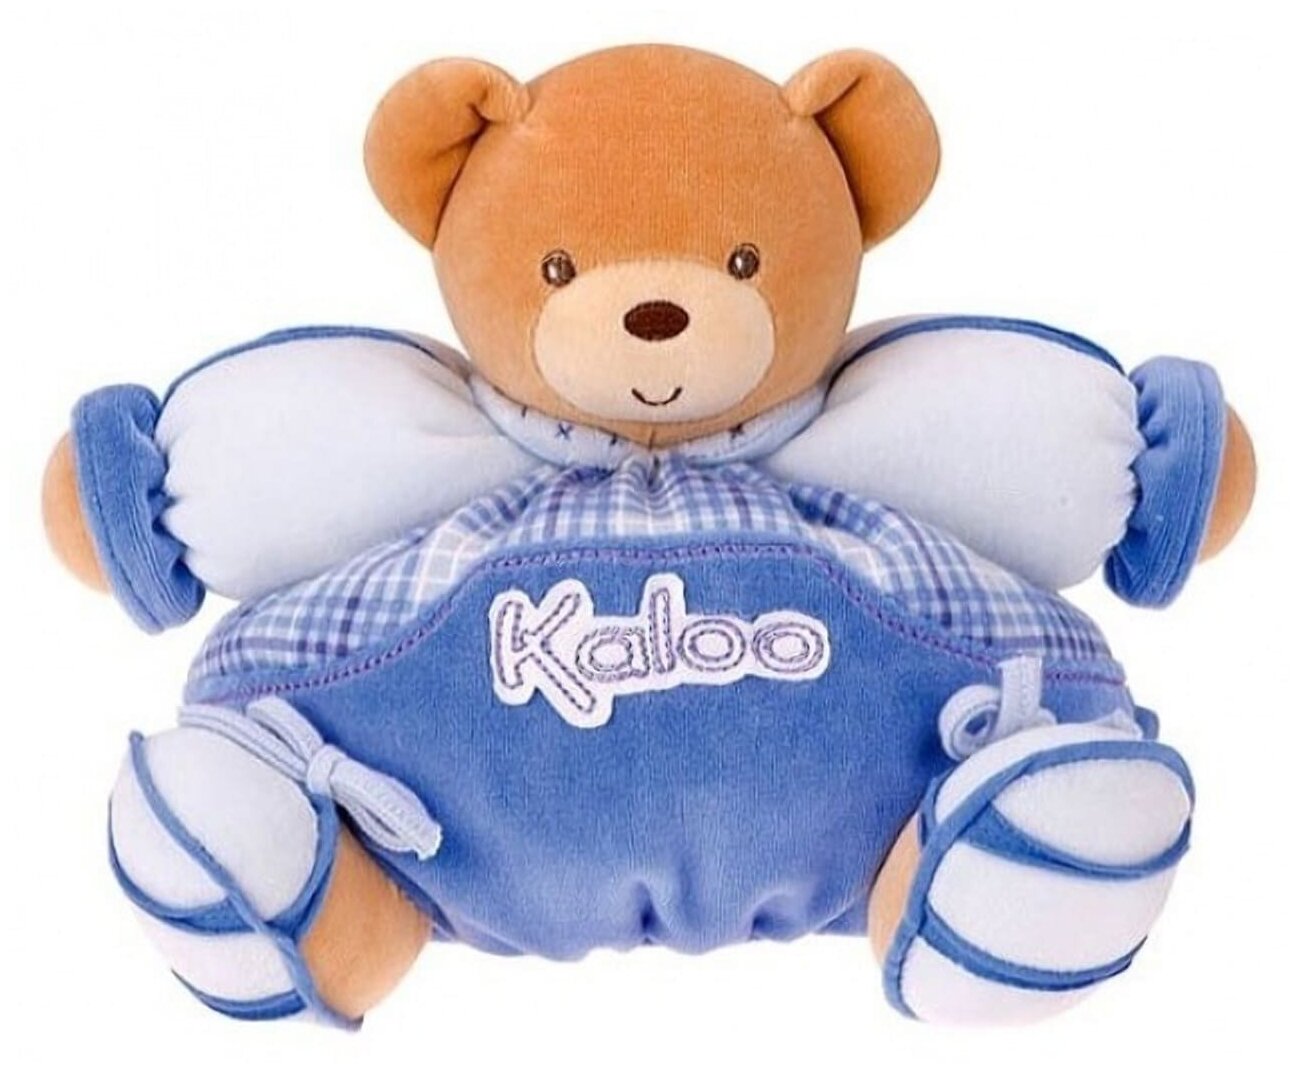 Мишка Kaloo 9610813 мягкая игрушка Medium Blue Bear Высота 25 см Коллекция Kaloo Blue Франция